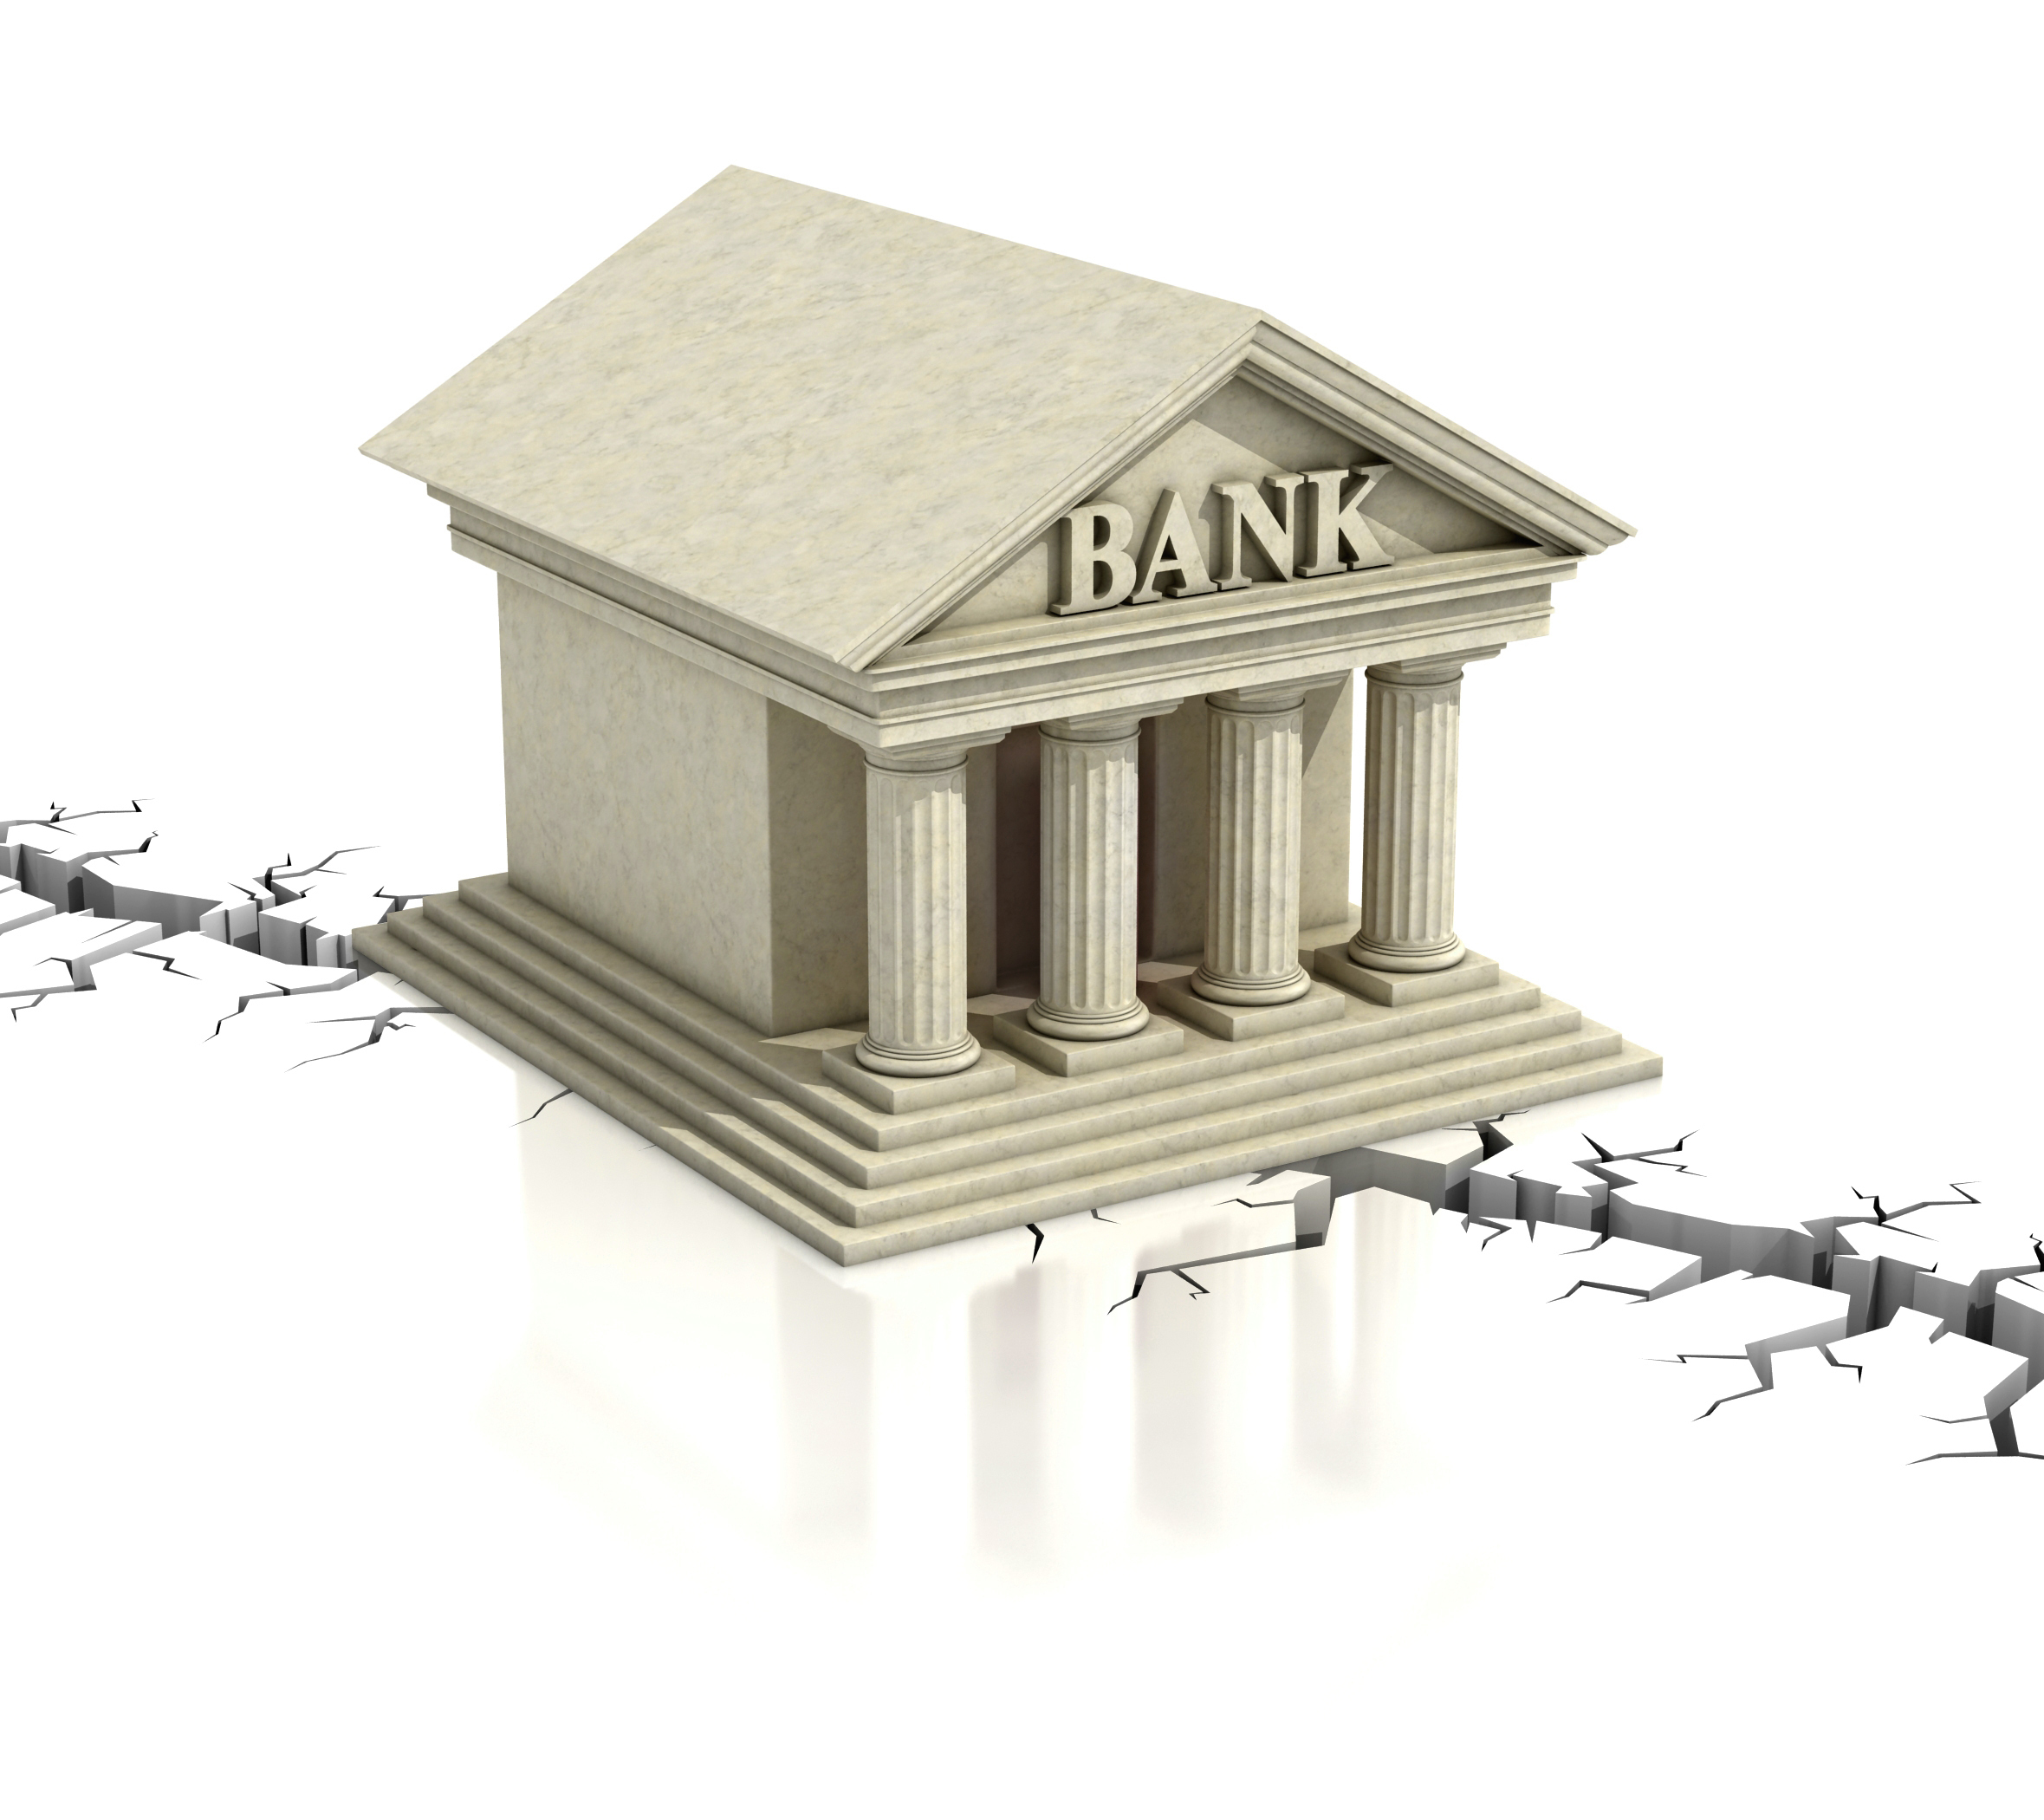 “Il sistema bancario non ha bisogno di slogan, subito azioni concrete”